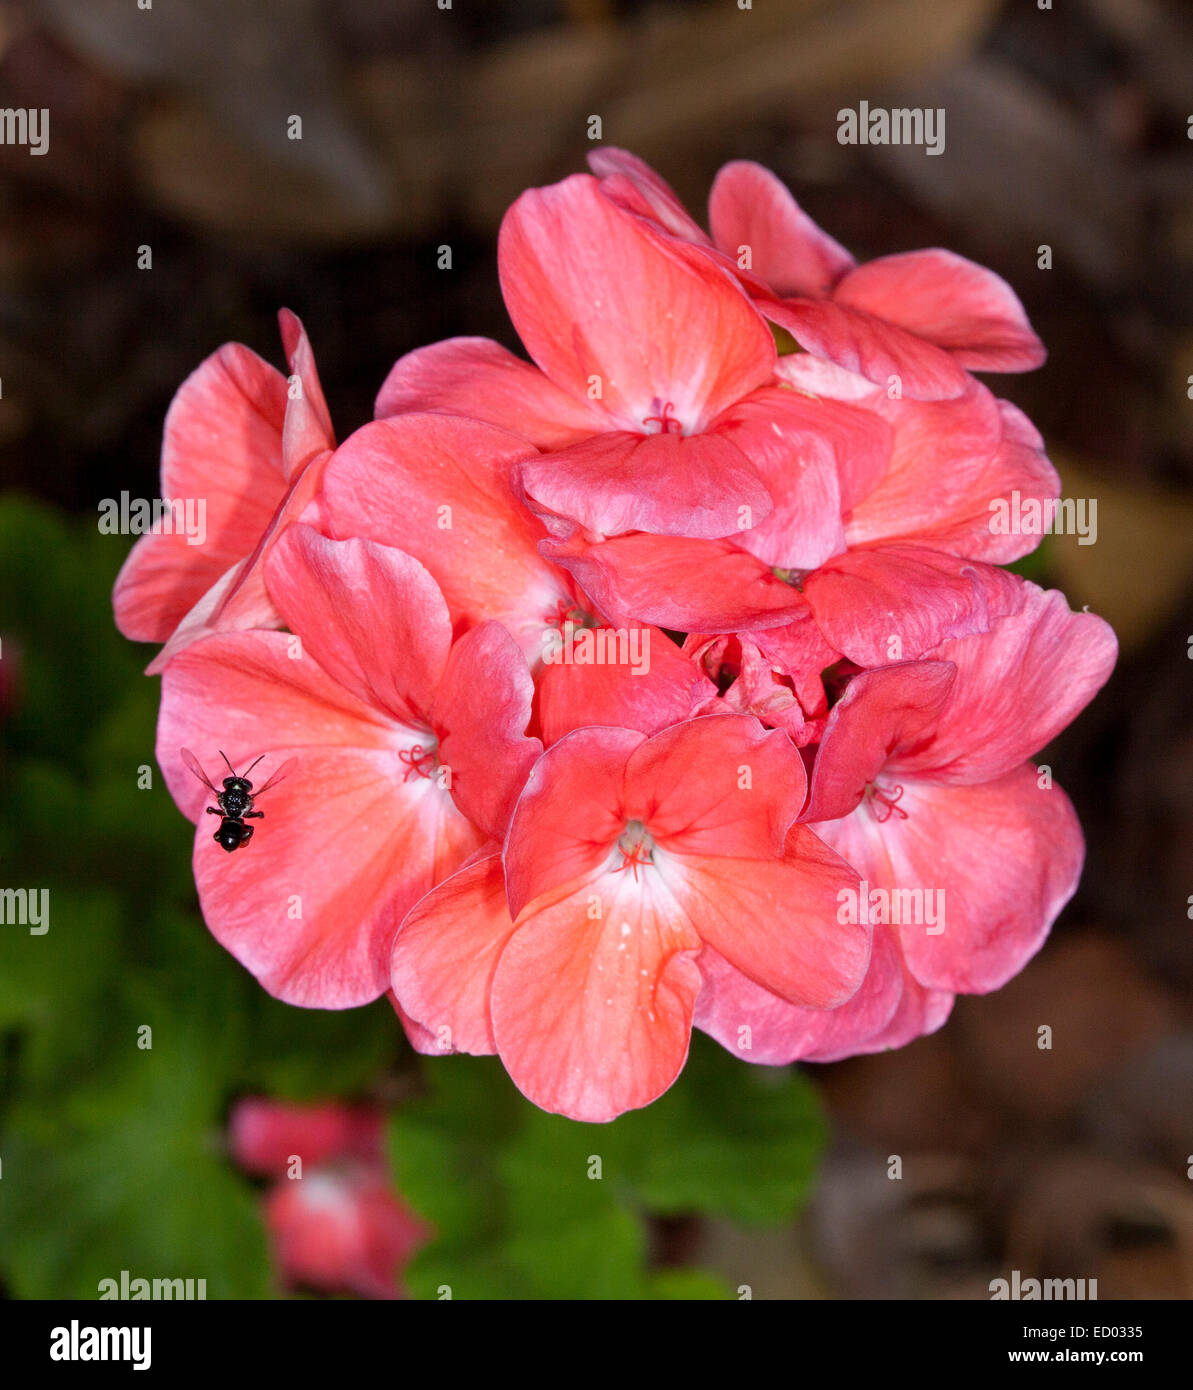 Grappe de fleurs rose vif magnifique abricot de géranium sur un fond sombre du feuillage - avec des pétales sur les insectes Banque D'Images